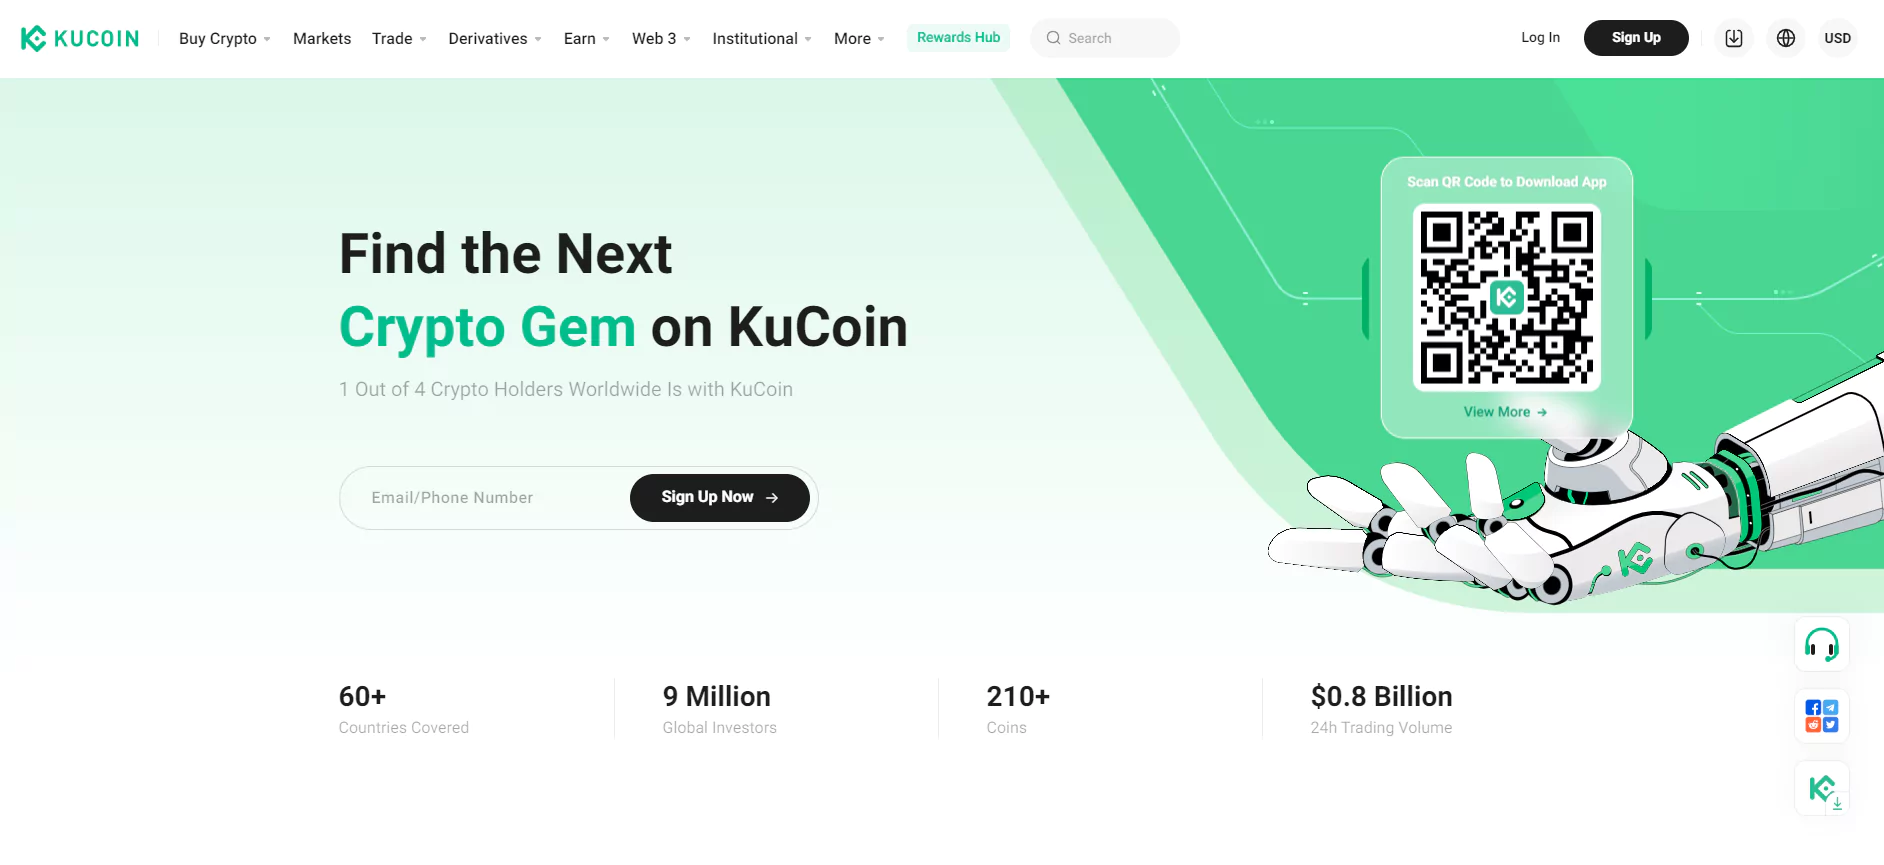 KuCoin Homepage